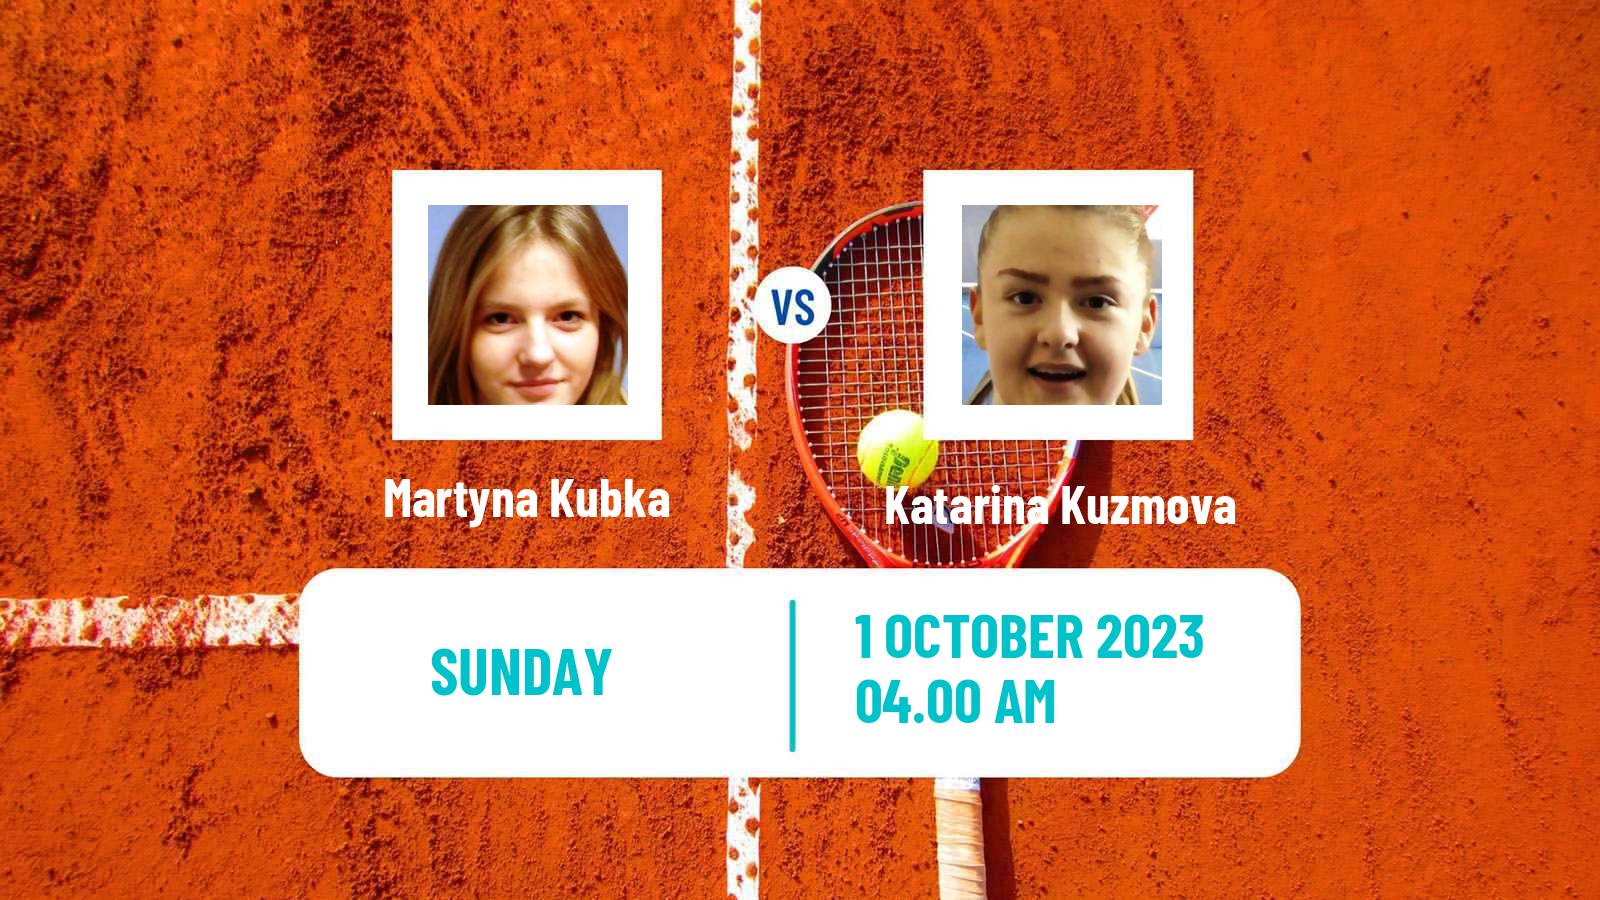 Tennis ITF W15 Sharm Elsheikh 12 Women Martyna Kubka - Katarina Kuzmova